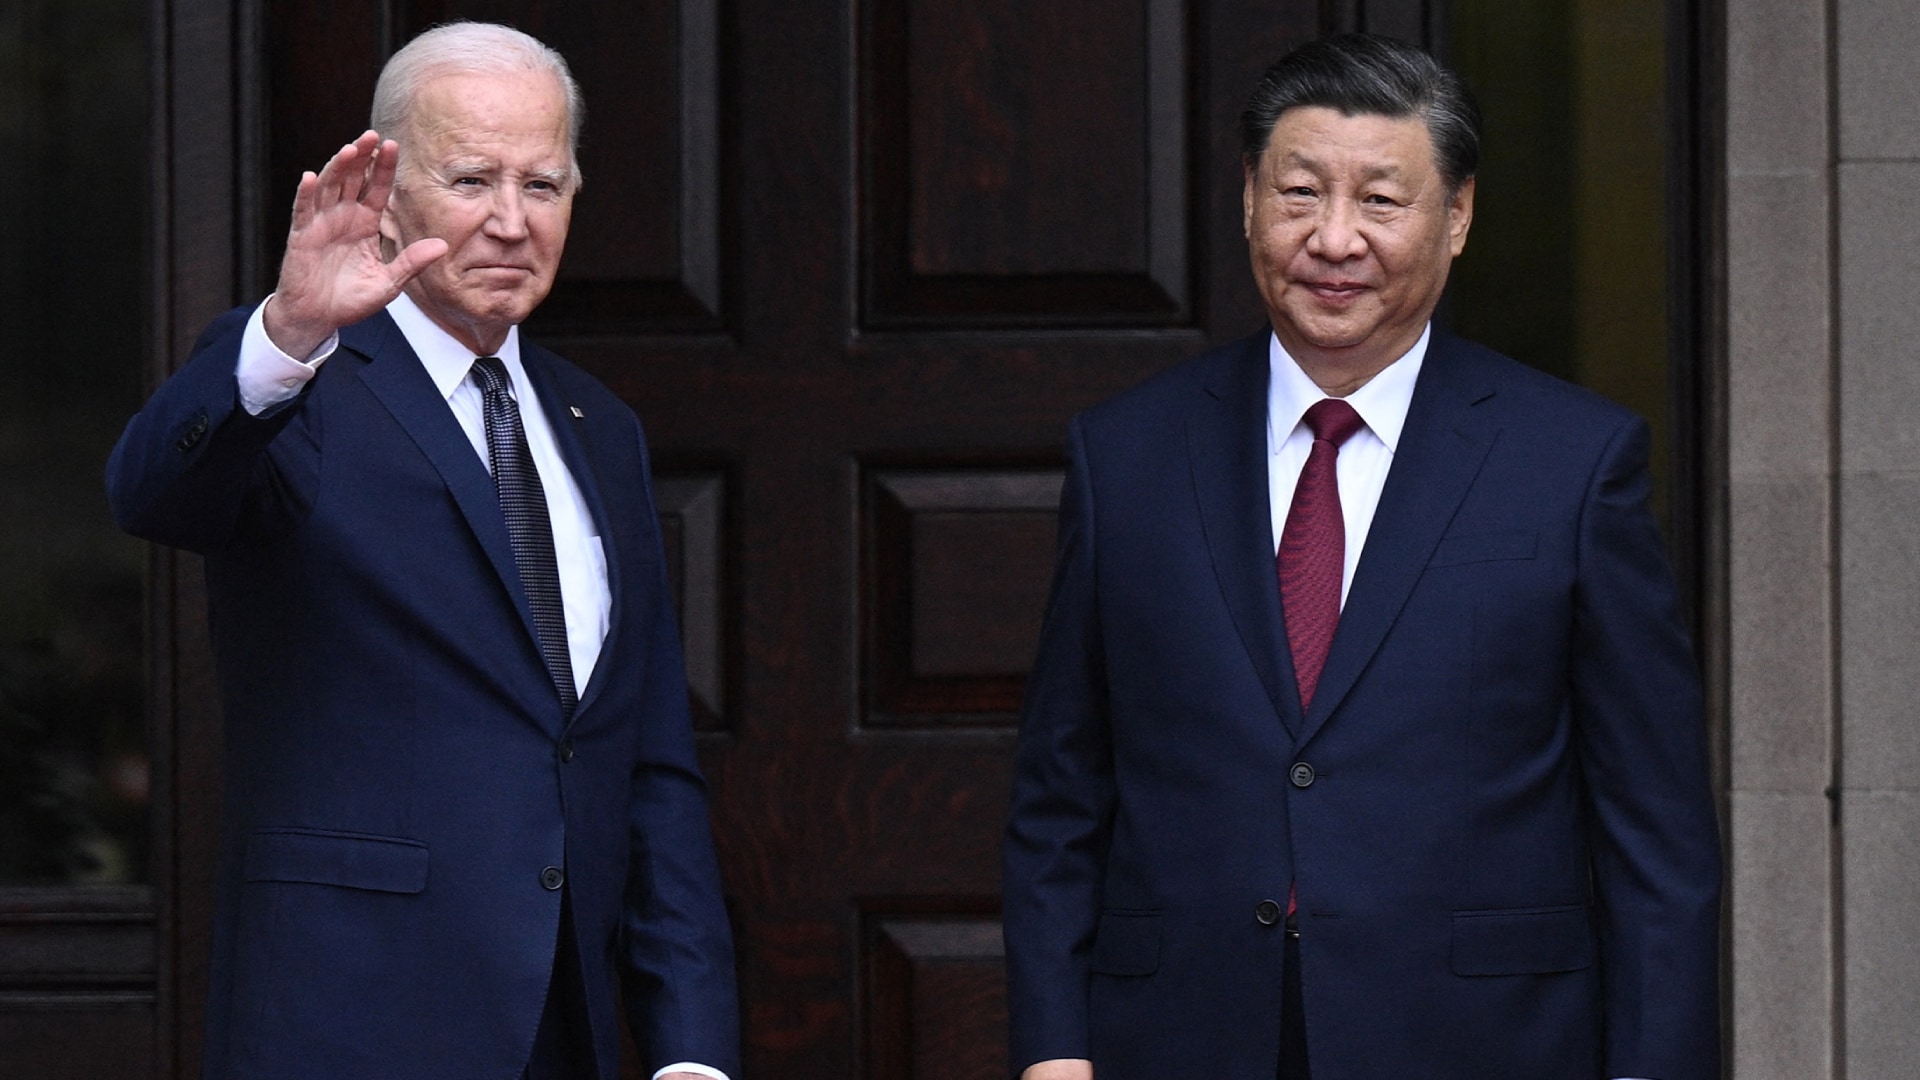 بهبود روابط: نهاد ویژه ایالات متحده می گوید که محدودیت های تجاری چین پس از دیدار بایدن و شی کارساز نیست